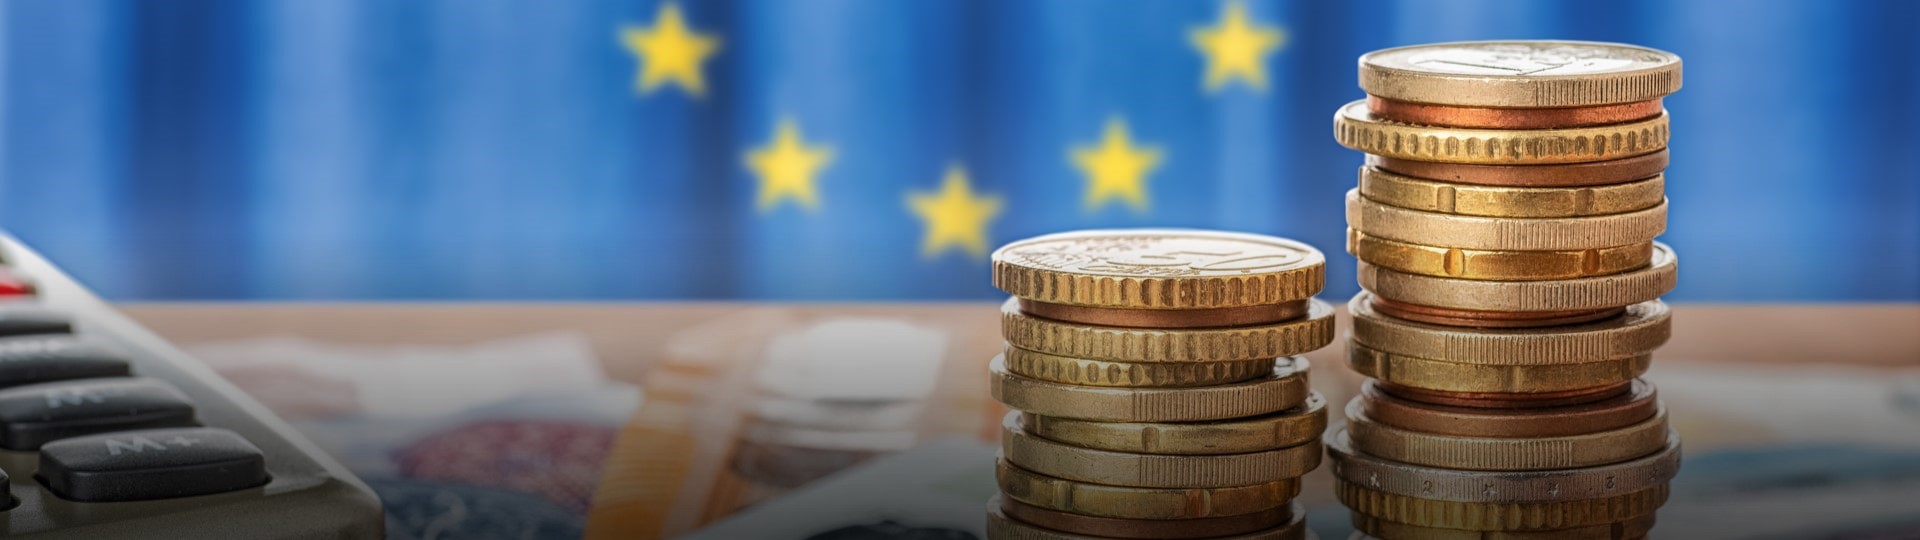 Eurozóna trpí vyšším zadlužením než zbylé země Evropské unie